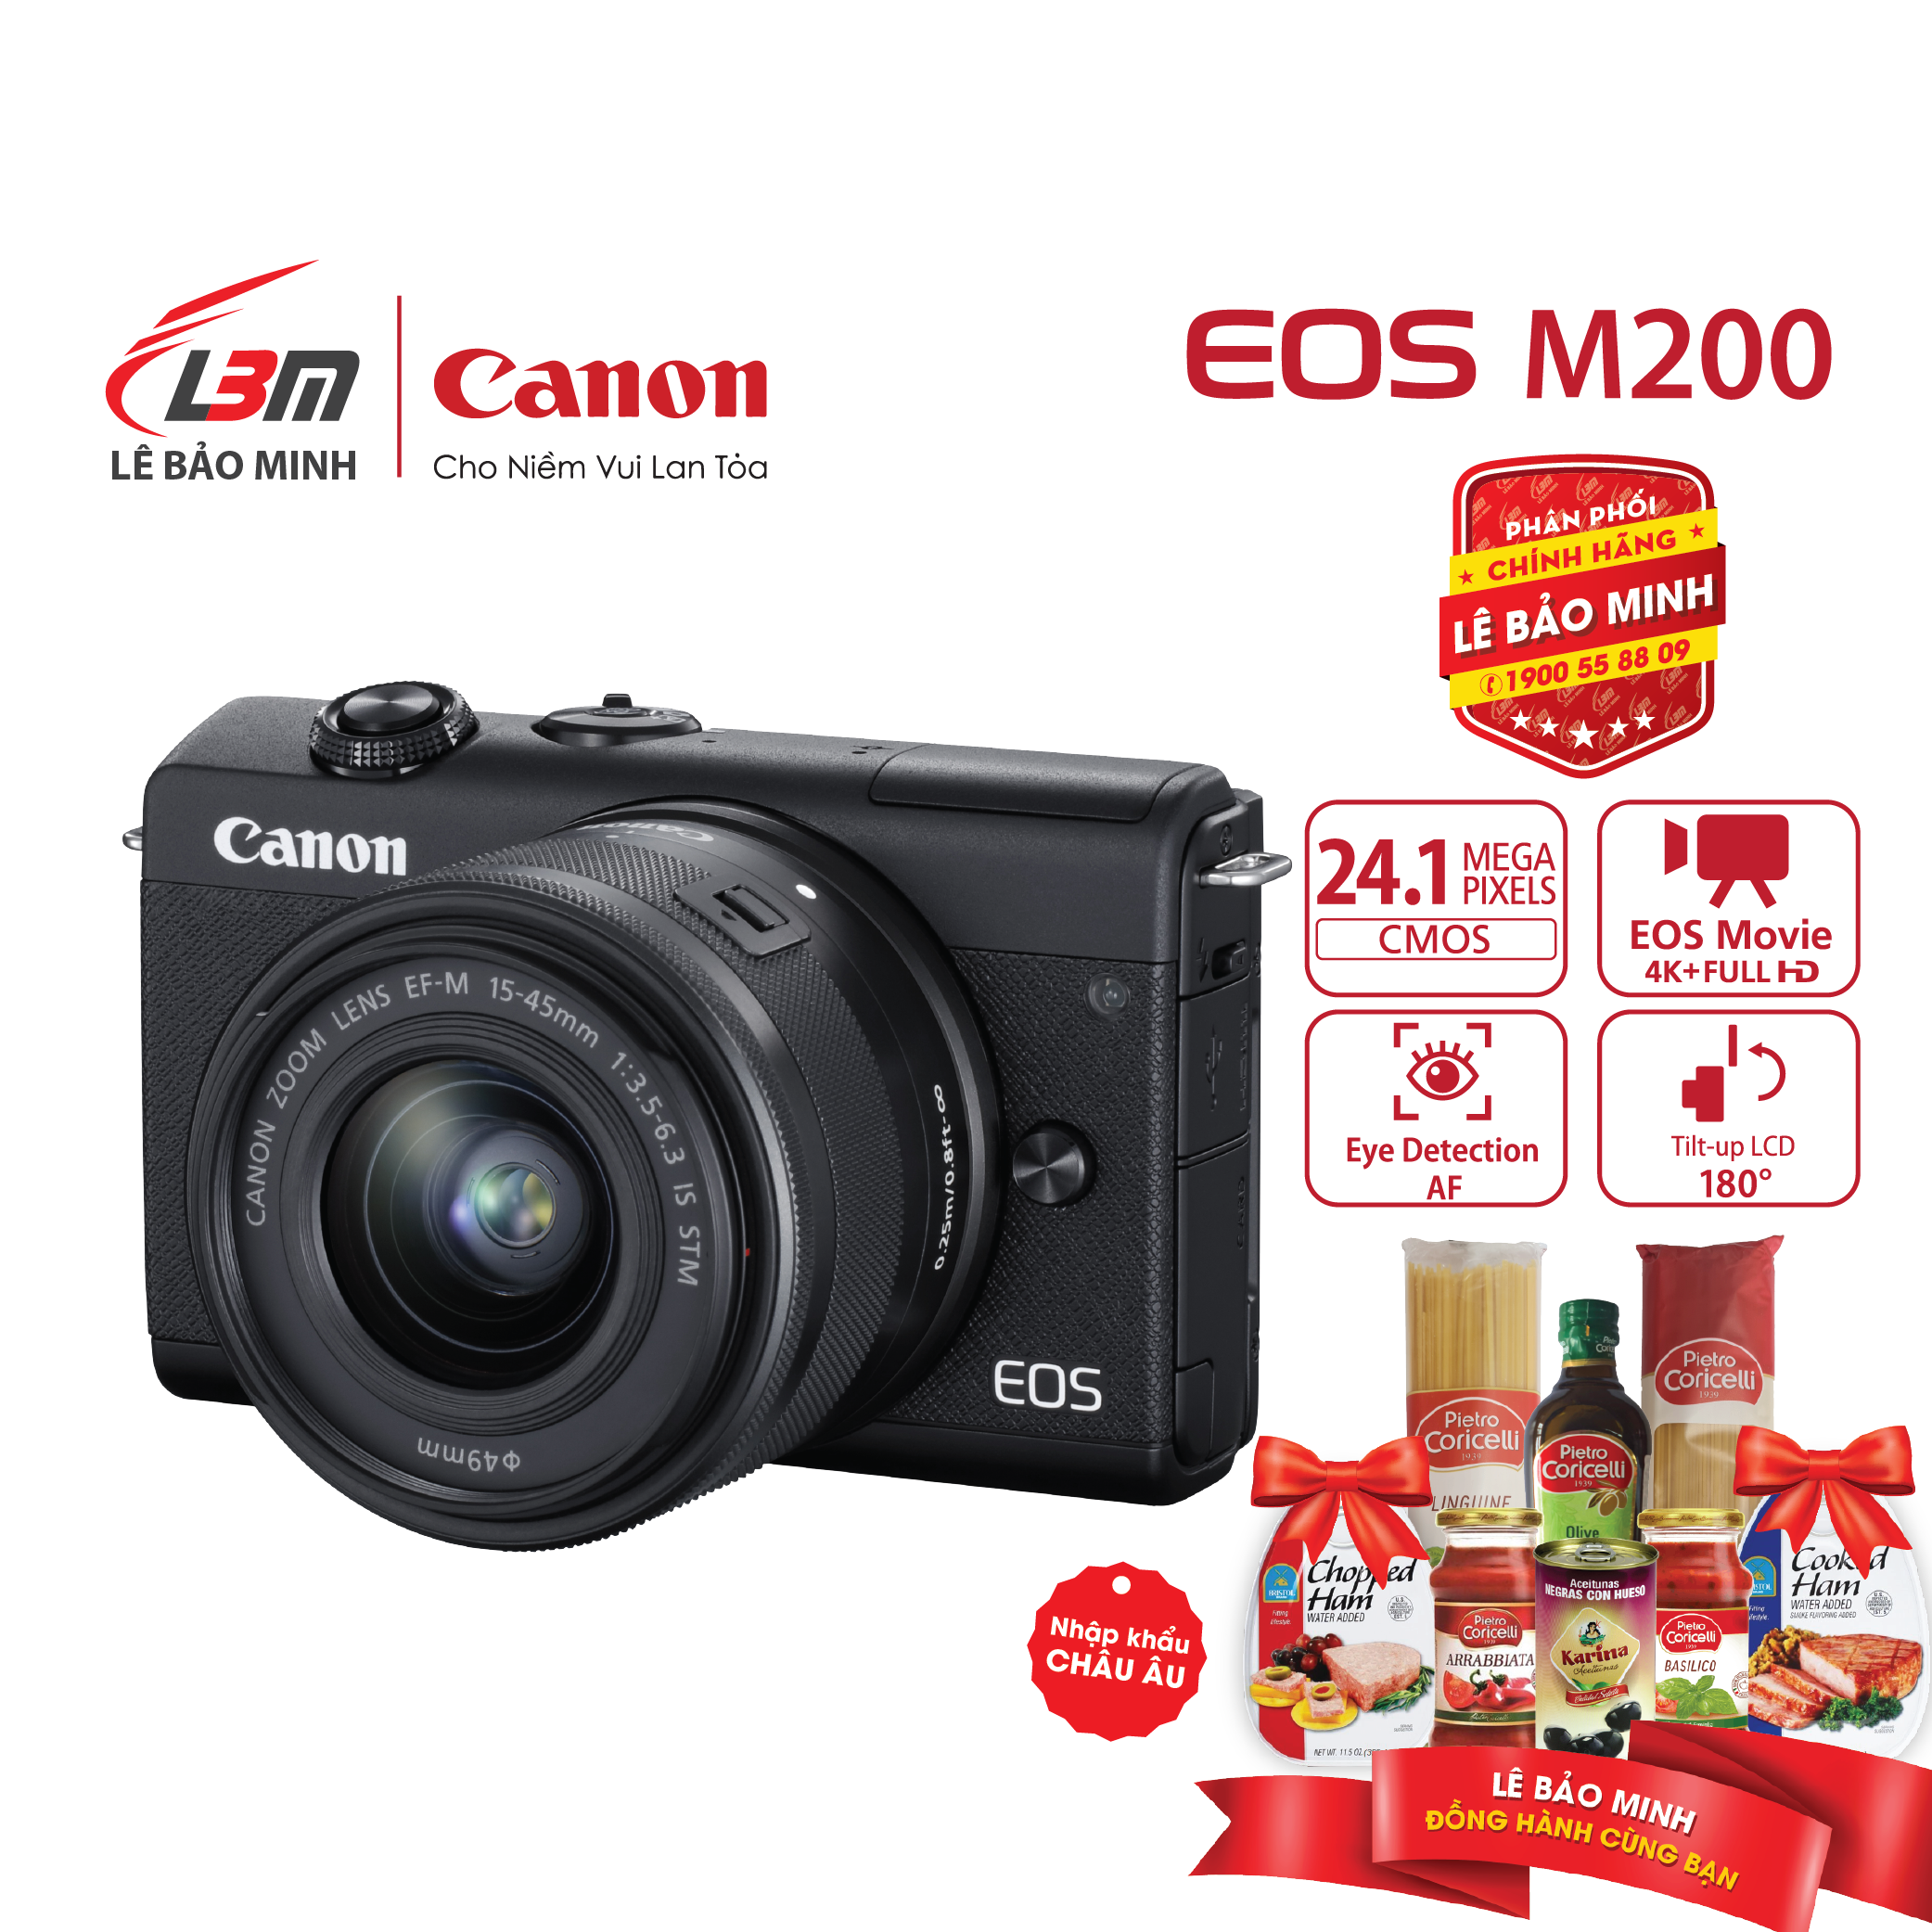 [voucher 9%]Máy ảnh Canon EOS M200 KIT EF-M15-45mm F/3.5-6.3 IS STM – Chính Hãng Lê Bảo Minh